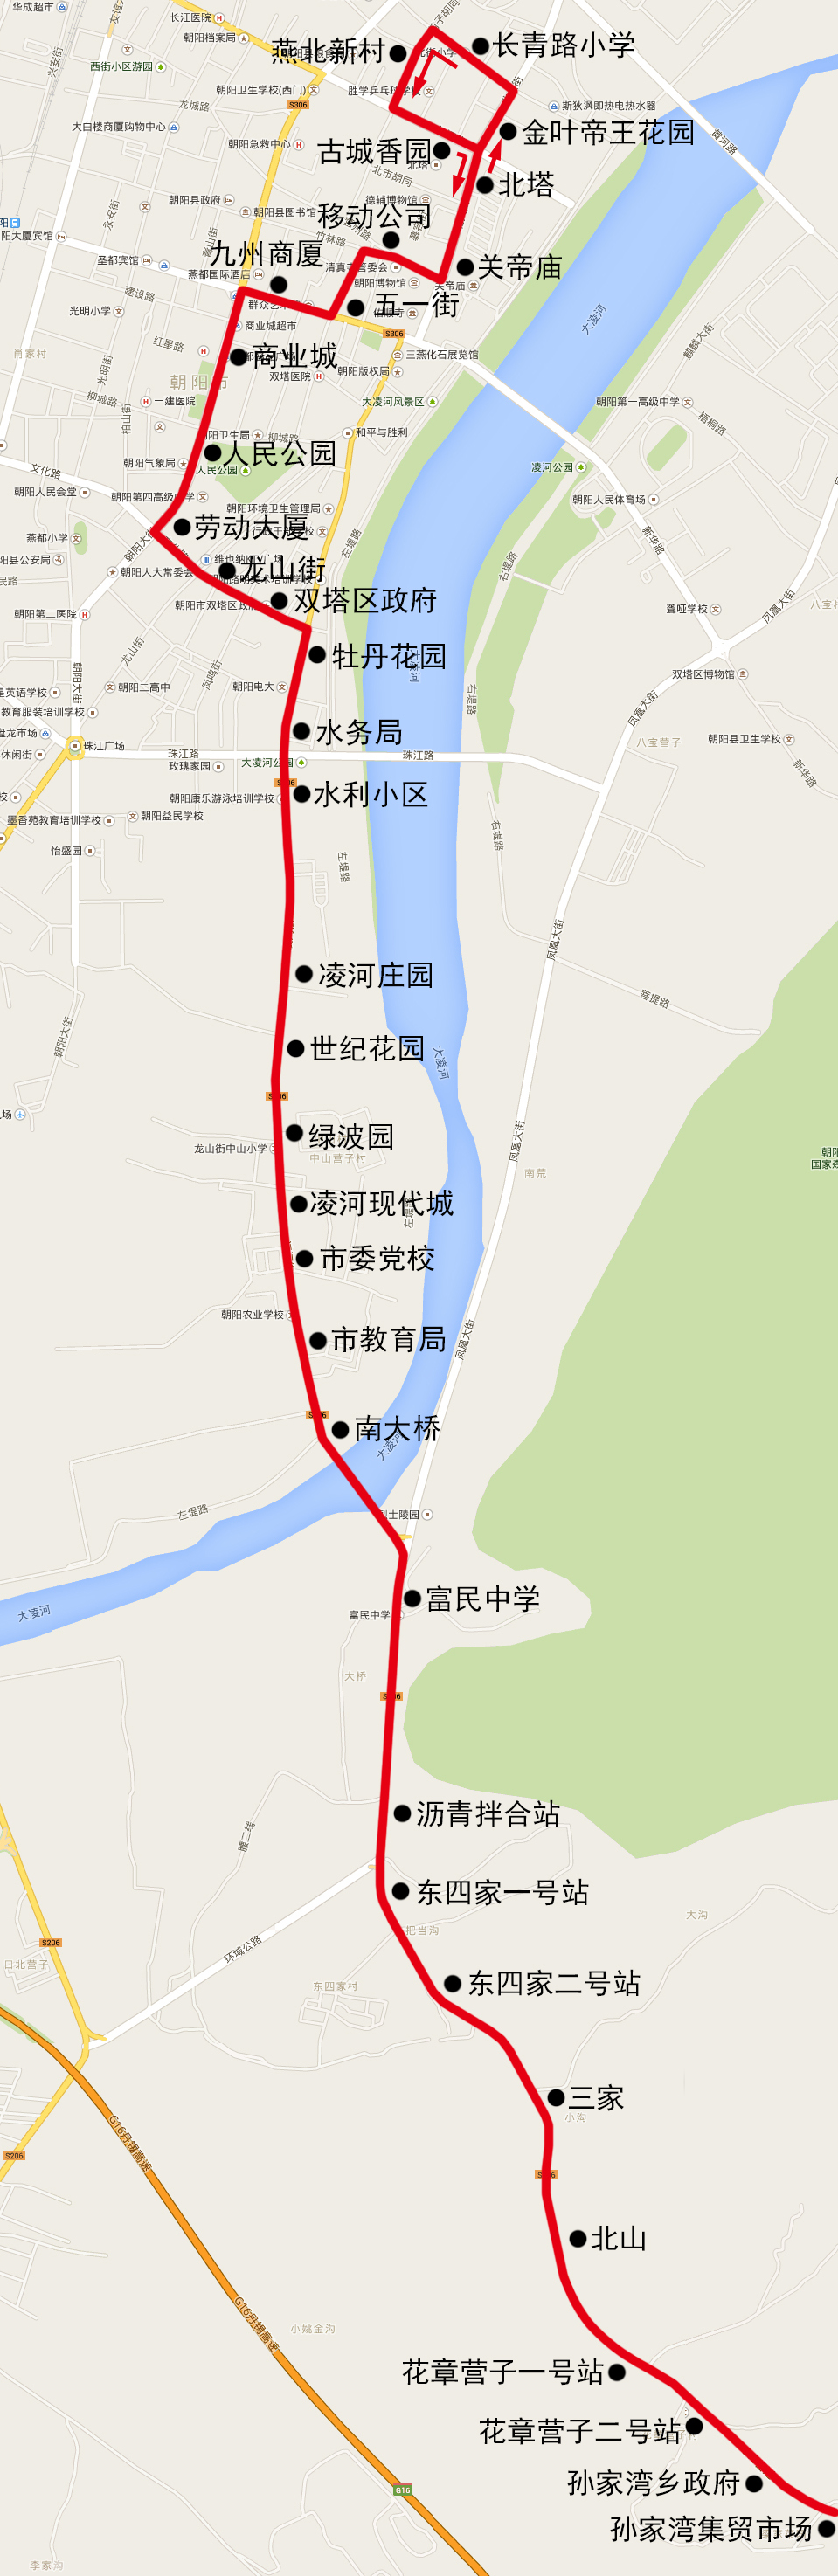 朝阳5路公交车路线